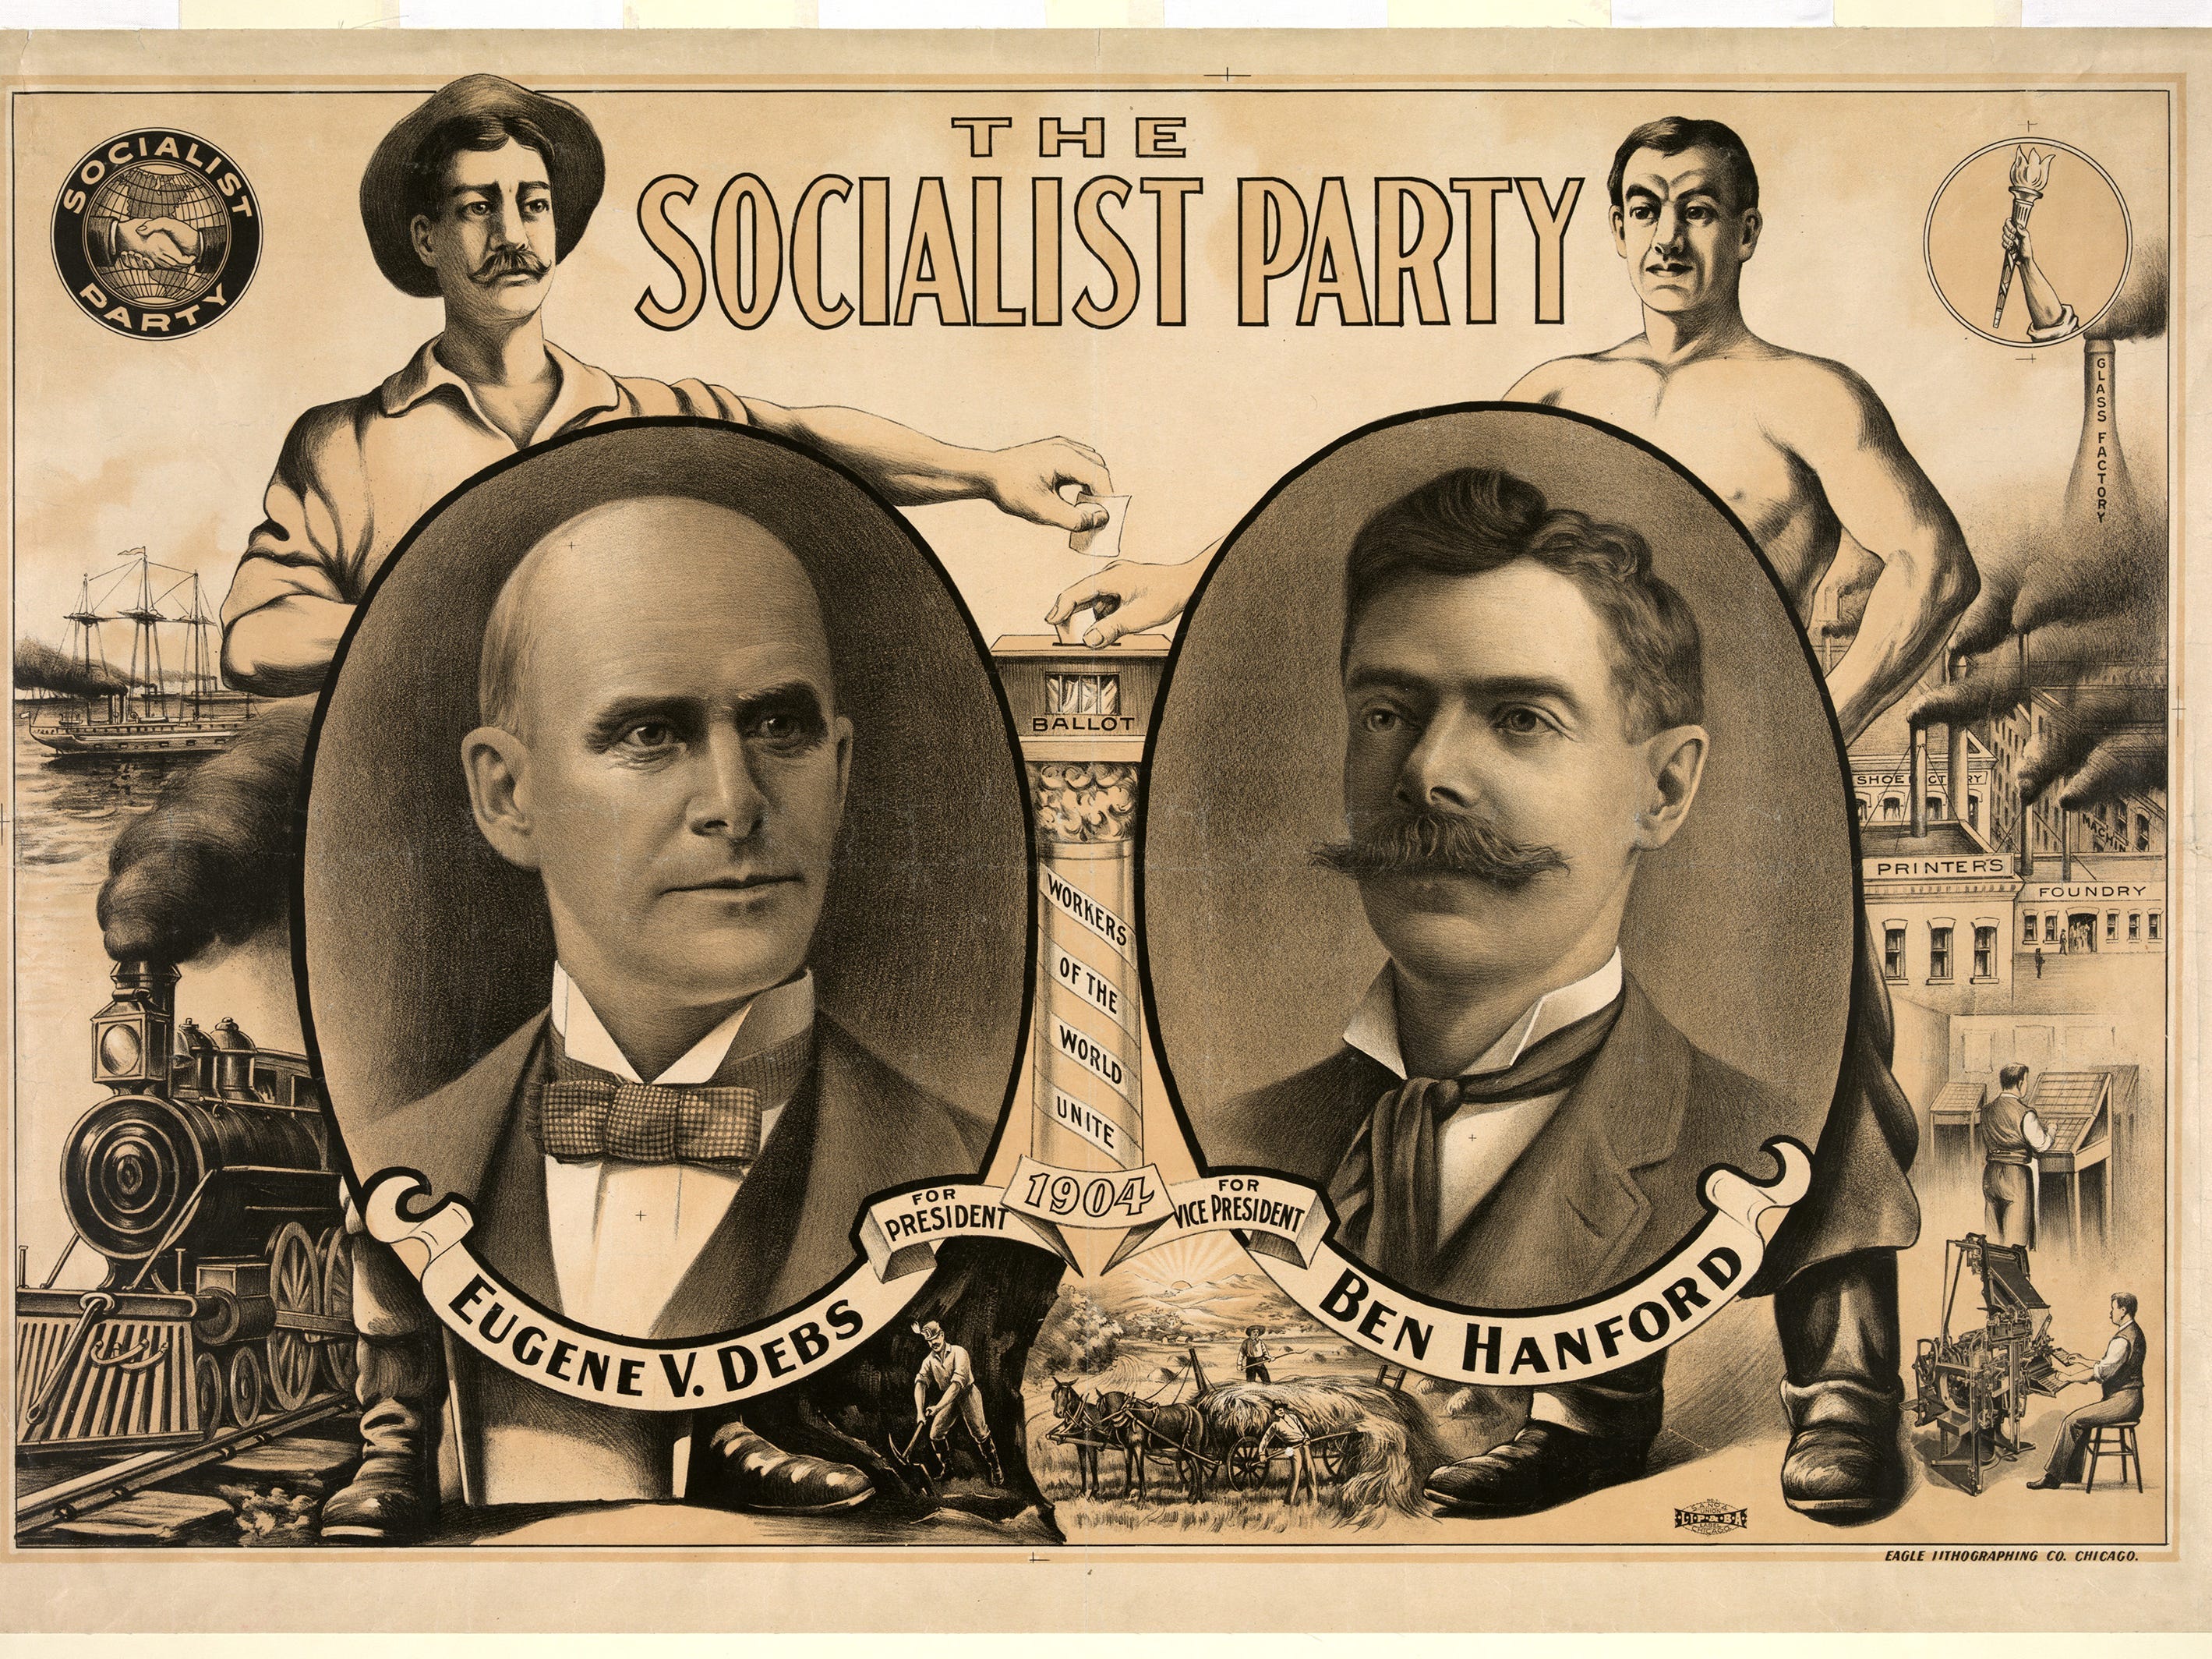 Die sozialistische Partei 1904 Eugene V. Debs und Ben Hanford.